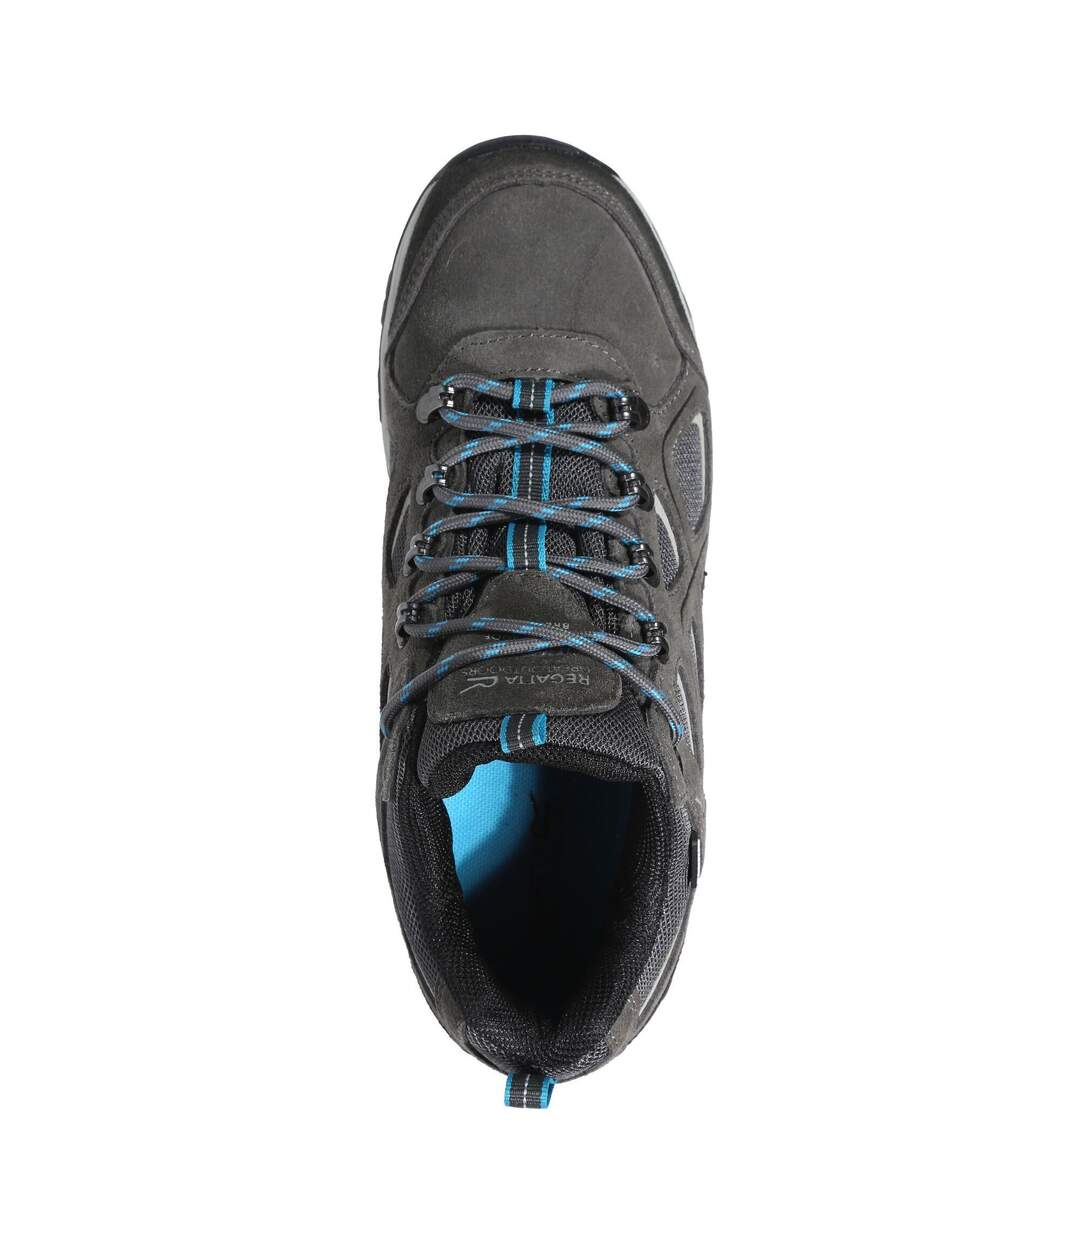 Regatta Womens/Ladies Tebay Waterproof Suede Walking Shoes (Dark Grey/Niagra Blue) - UTRG6437